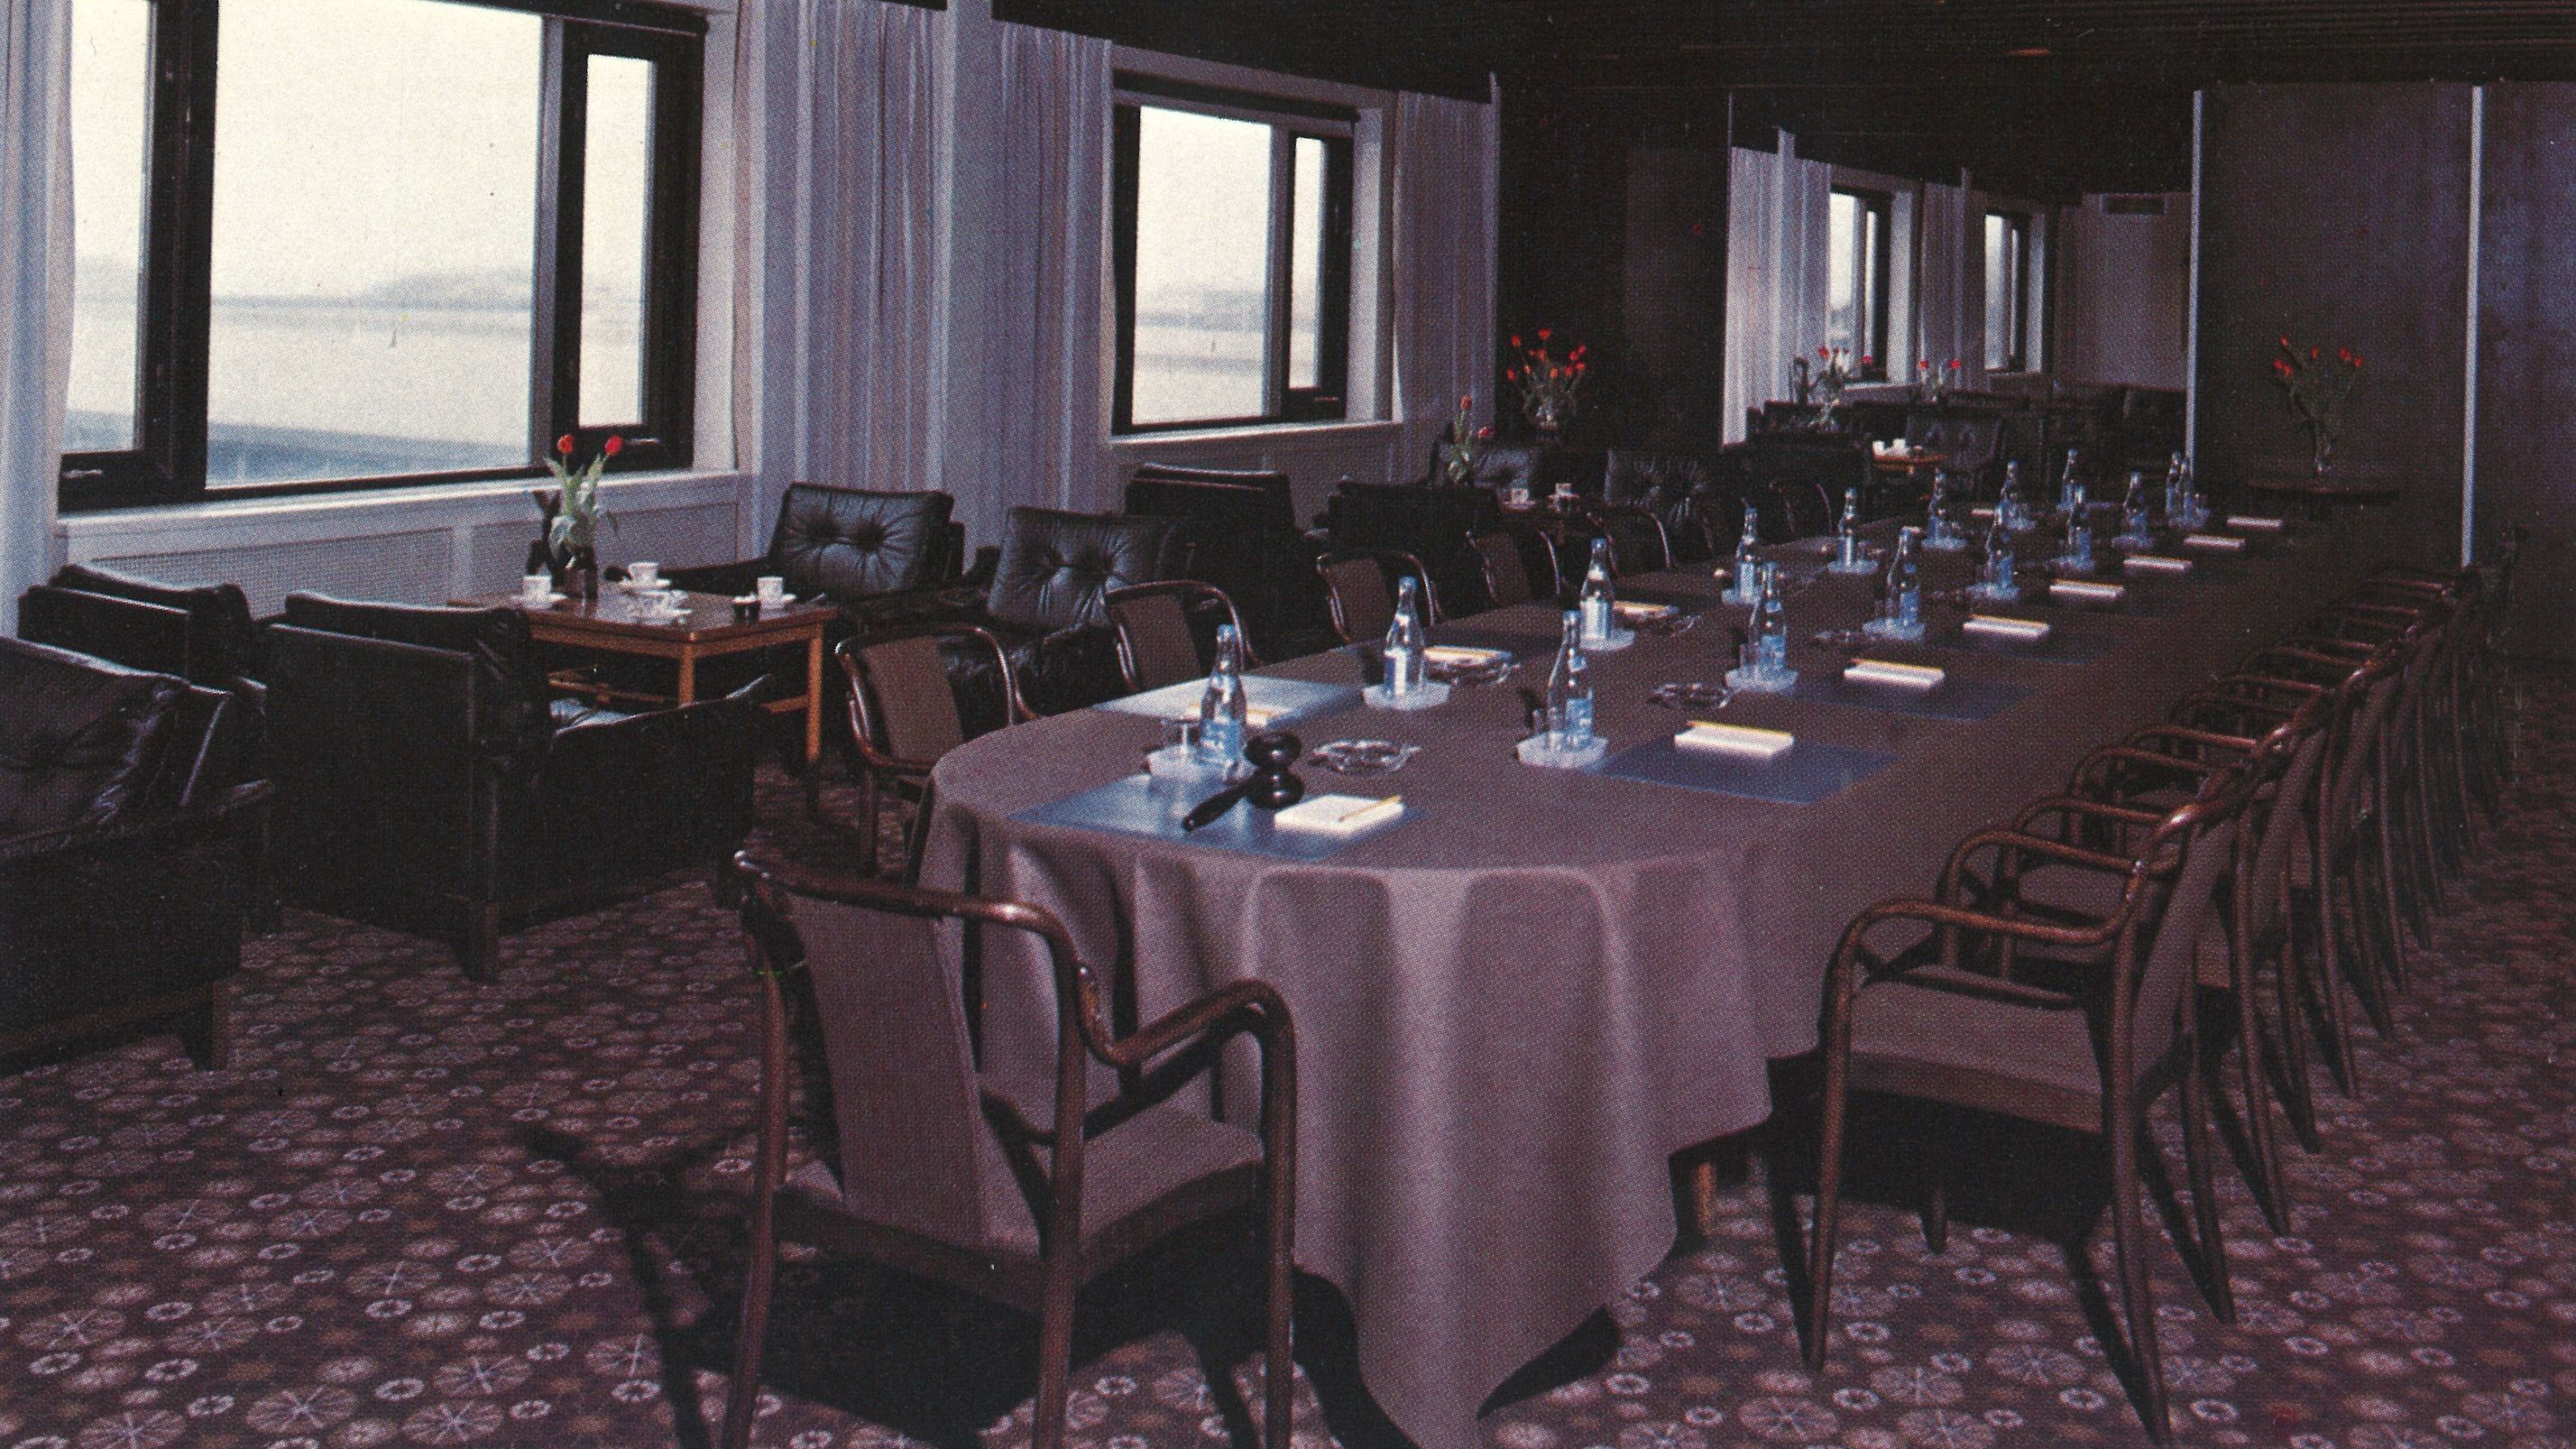 Tylöhus konferenslokal på mellanvåningen 1970-talet